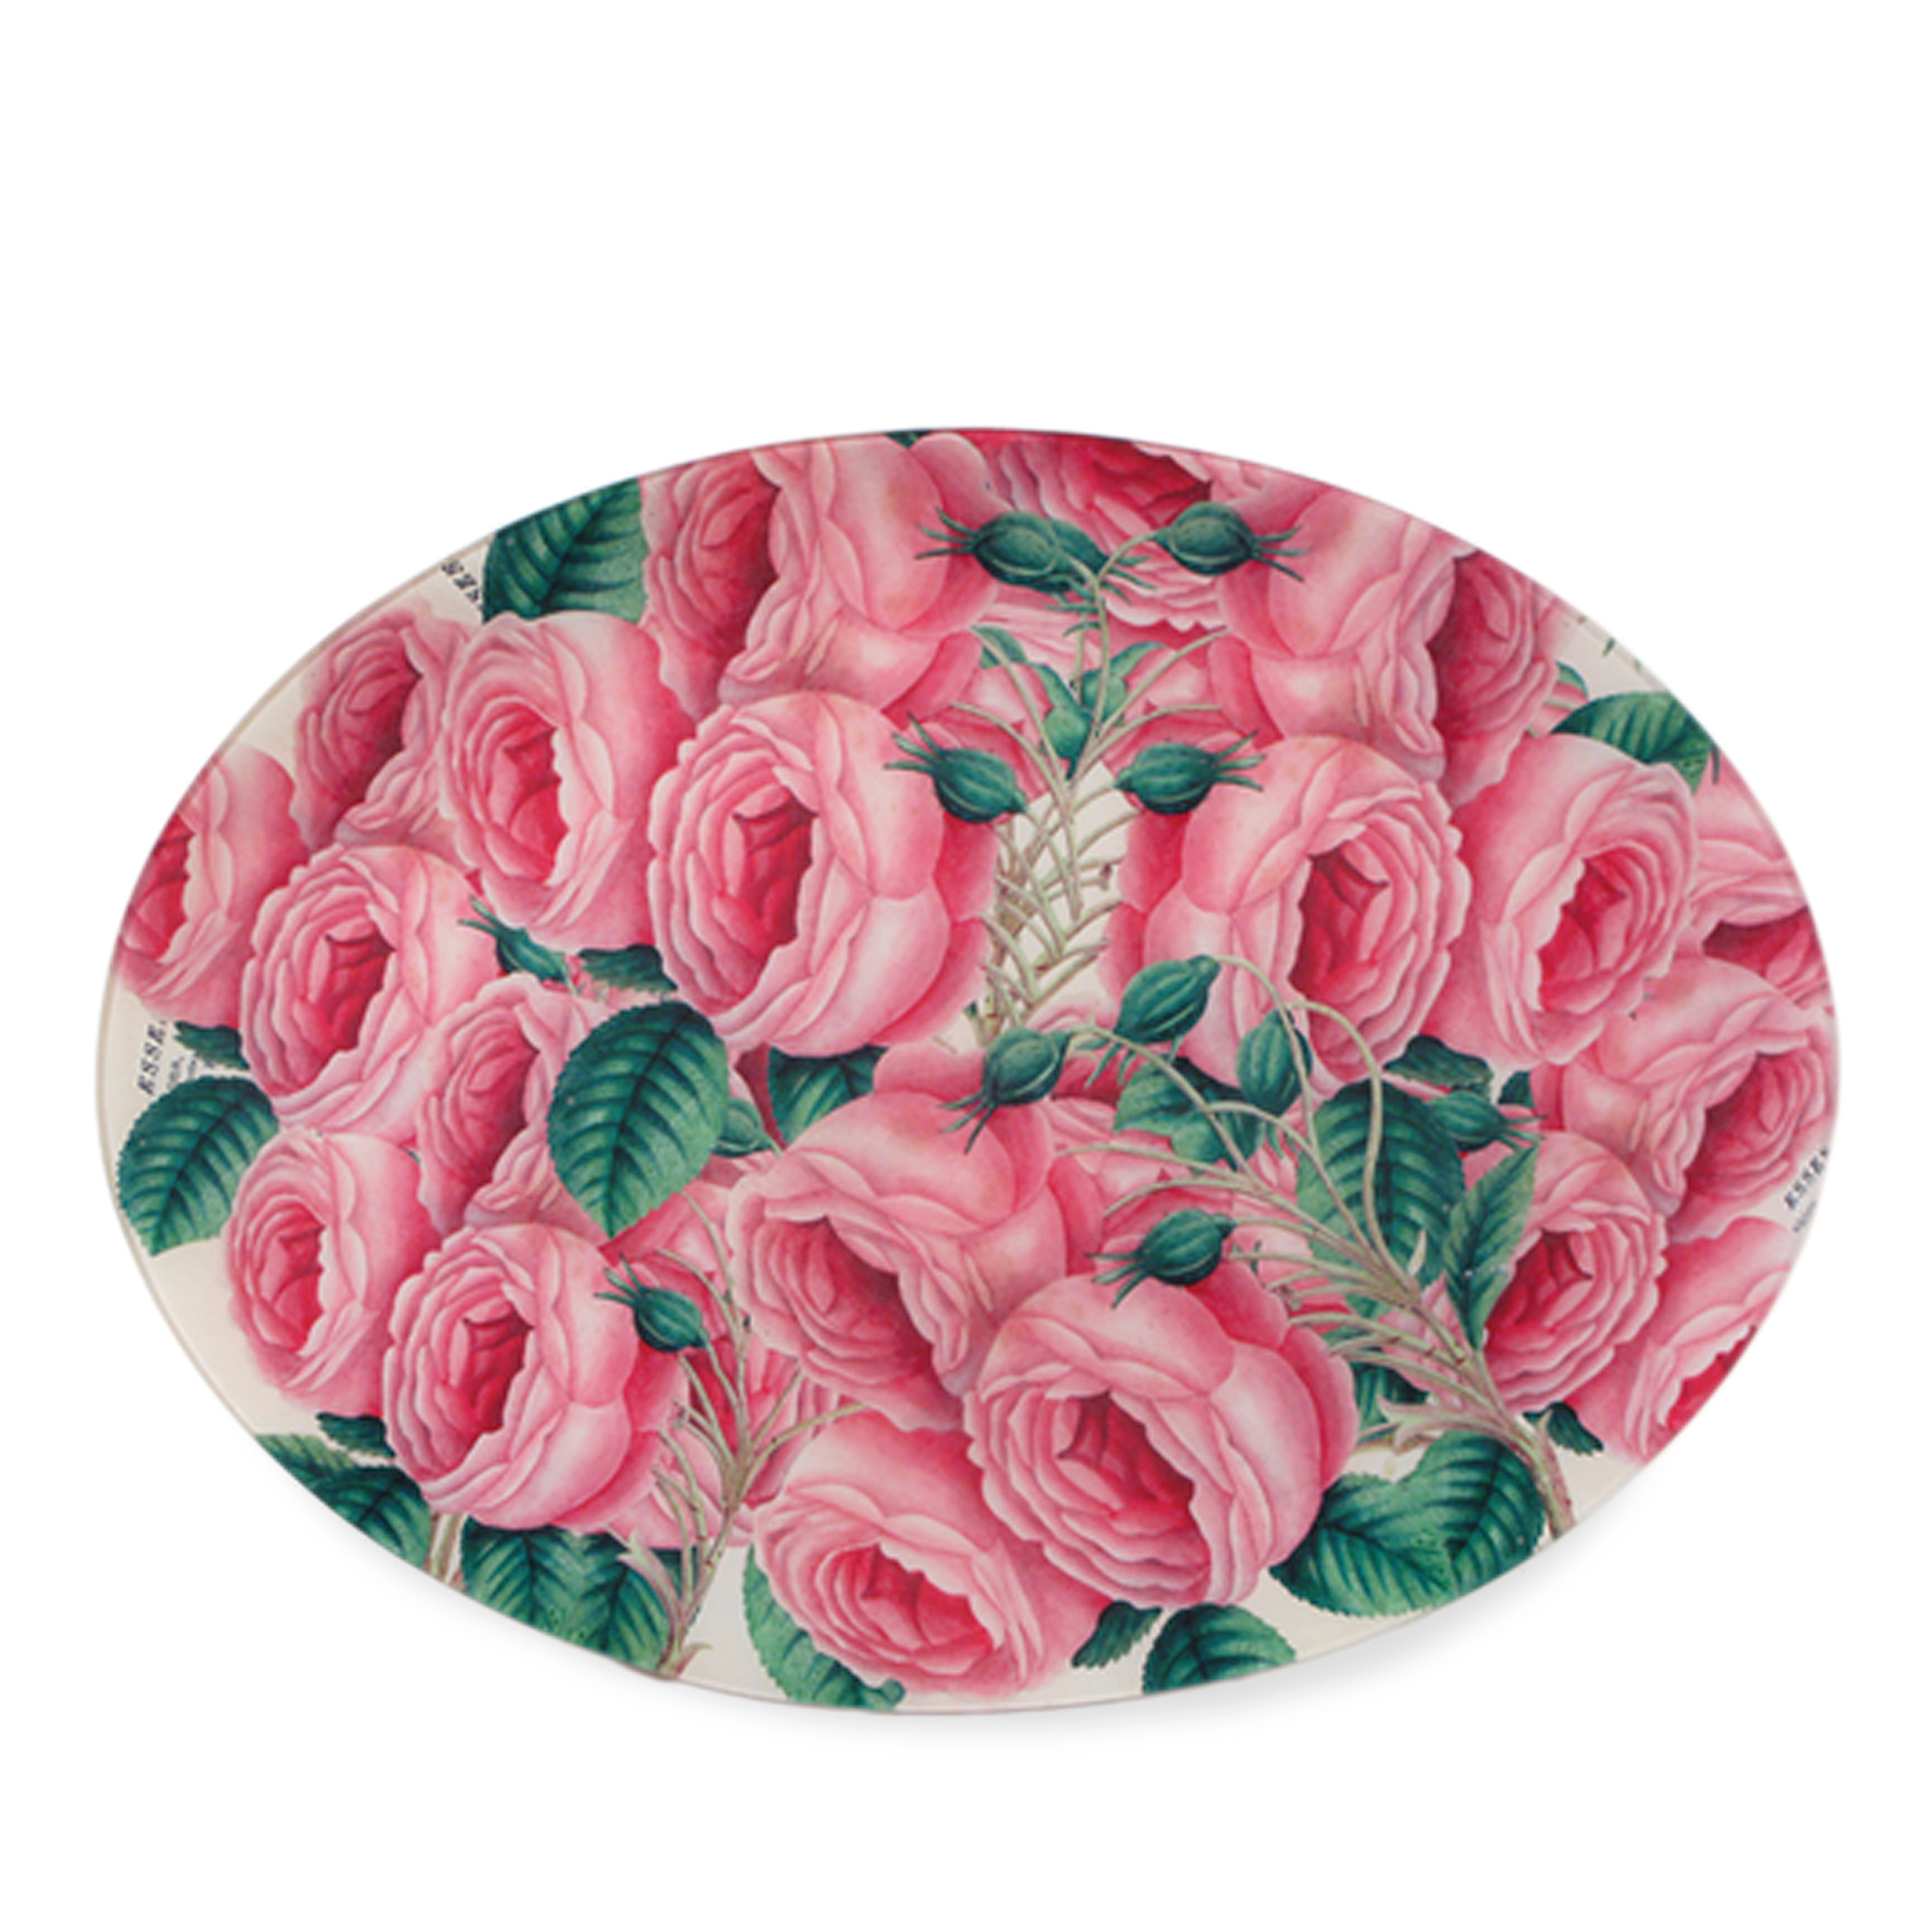 John Derian Cascading Roses Oval Platter, 35.5x48cm